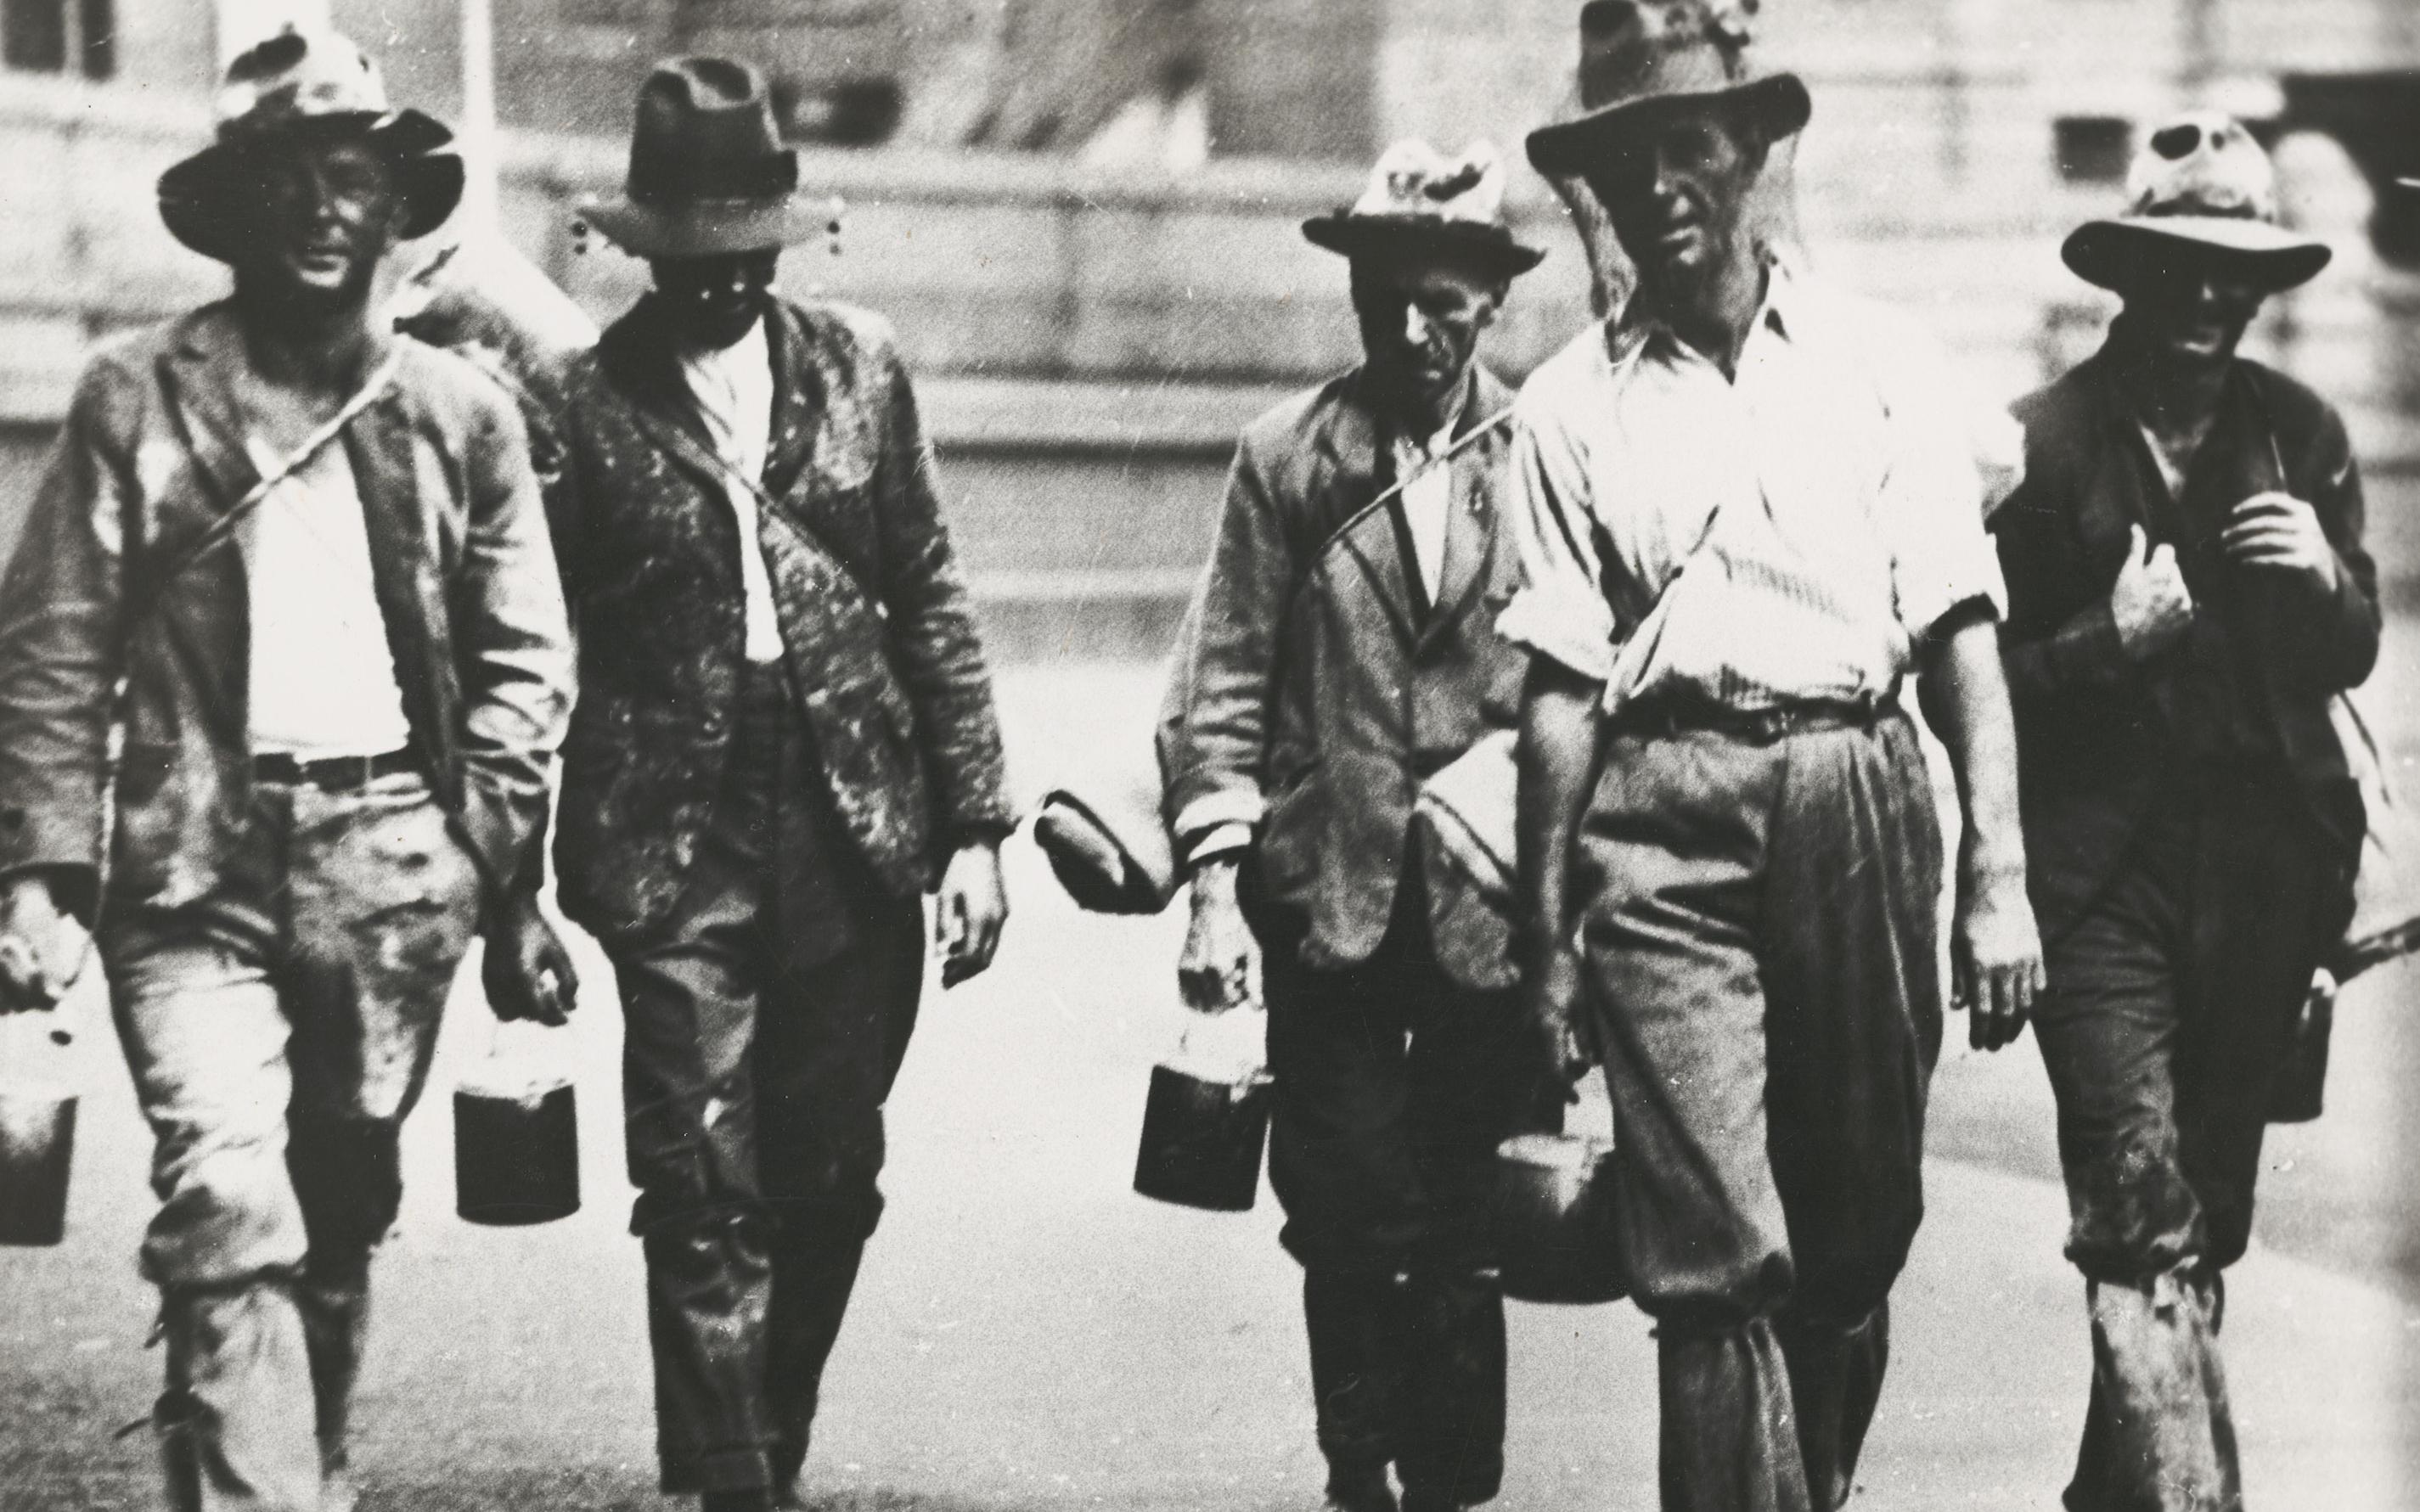 Men looking for work, 1930.